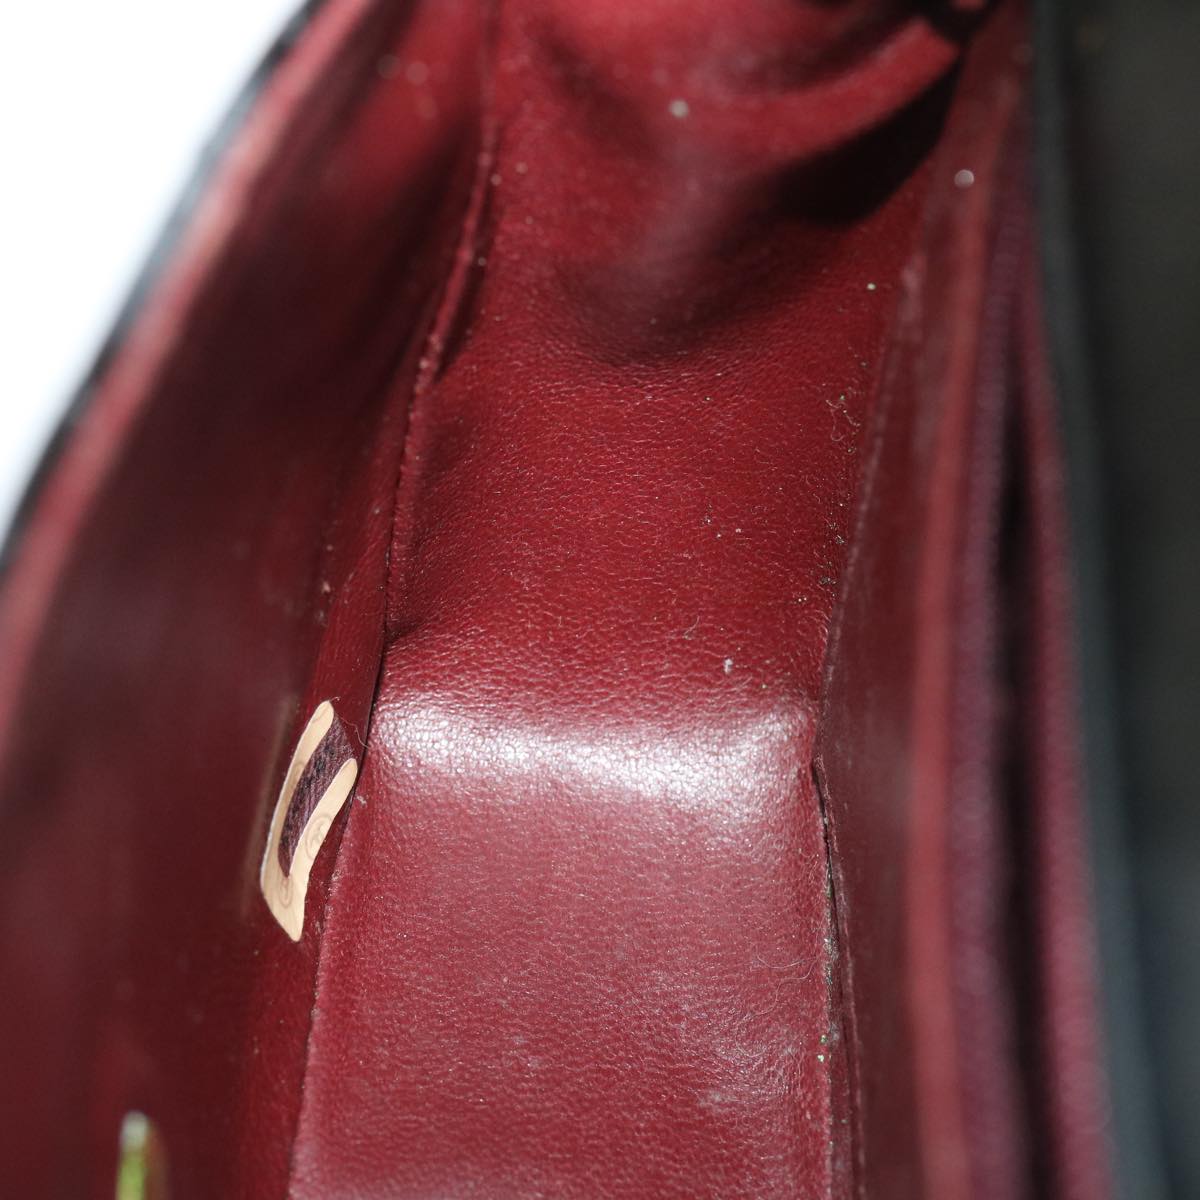 CHANEL Mini Matelasse Chain Flap Shoulder Bag Enamel Black Gold CC Auth ar6839A